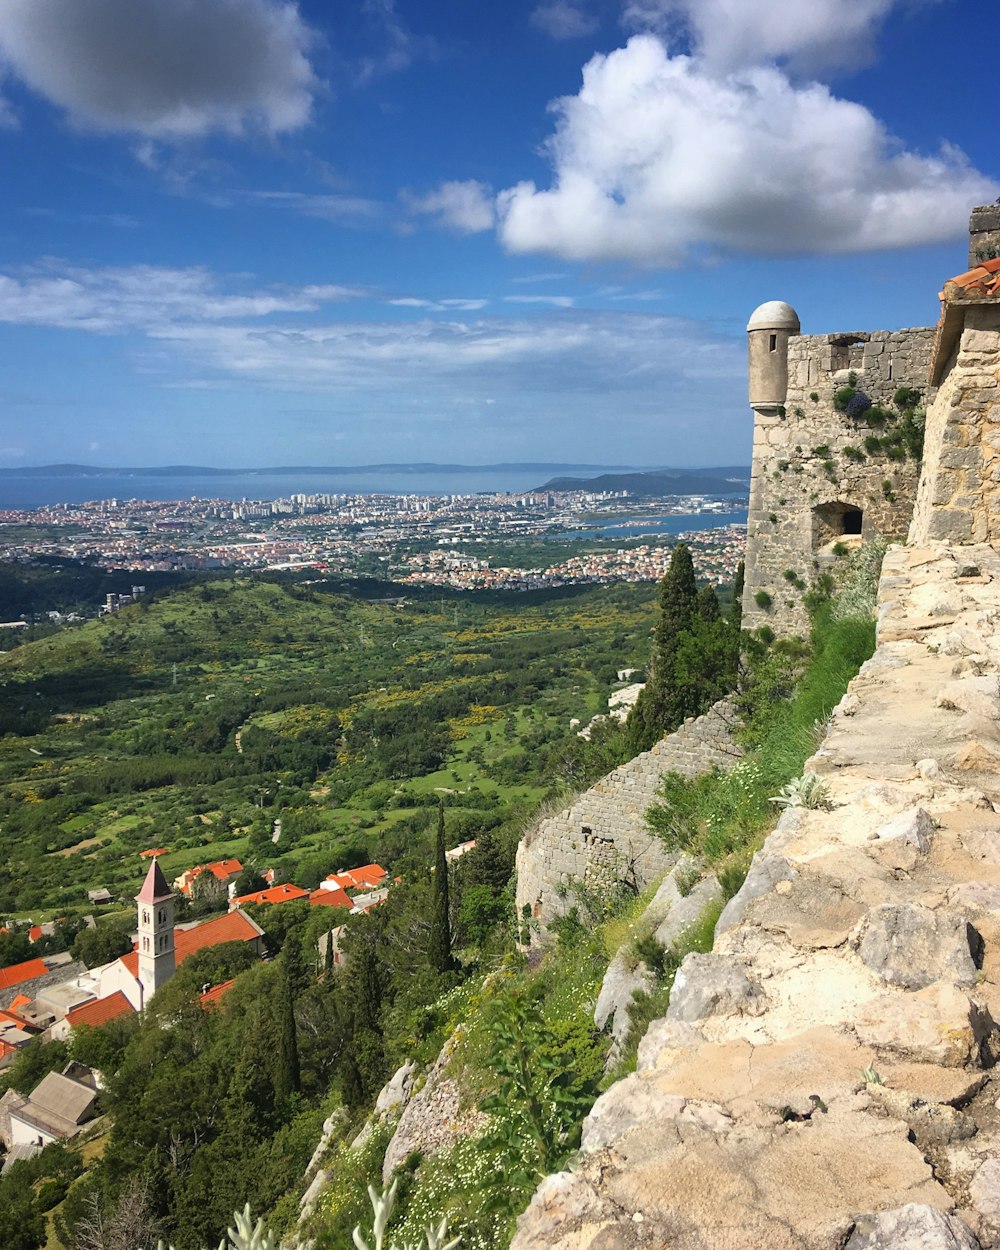 Una veduta di una città da un castello in cima a una collina